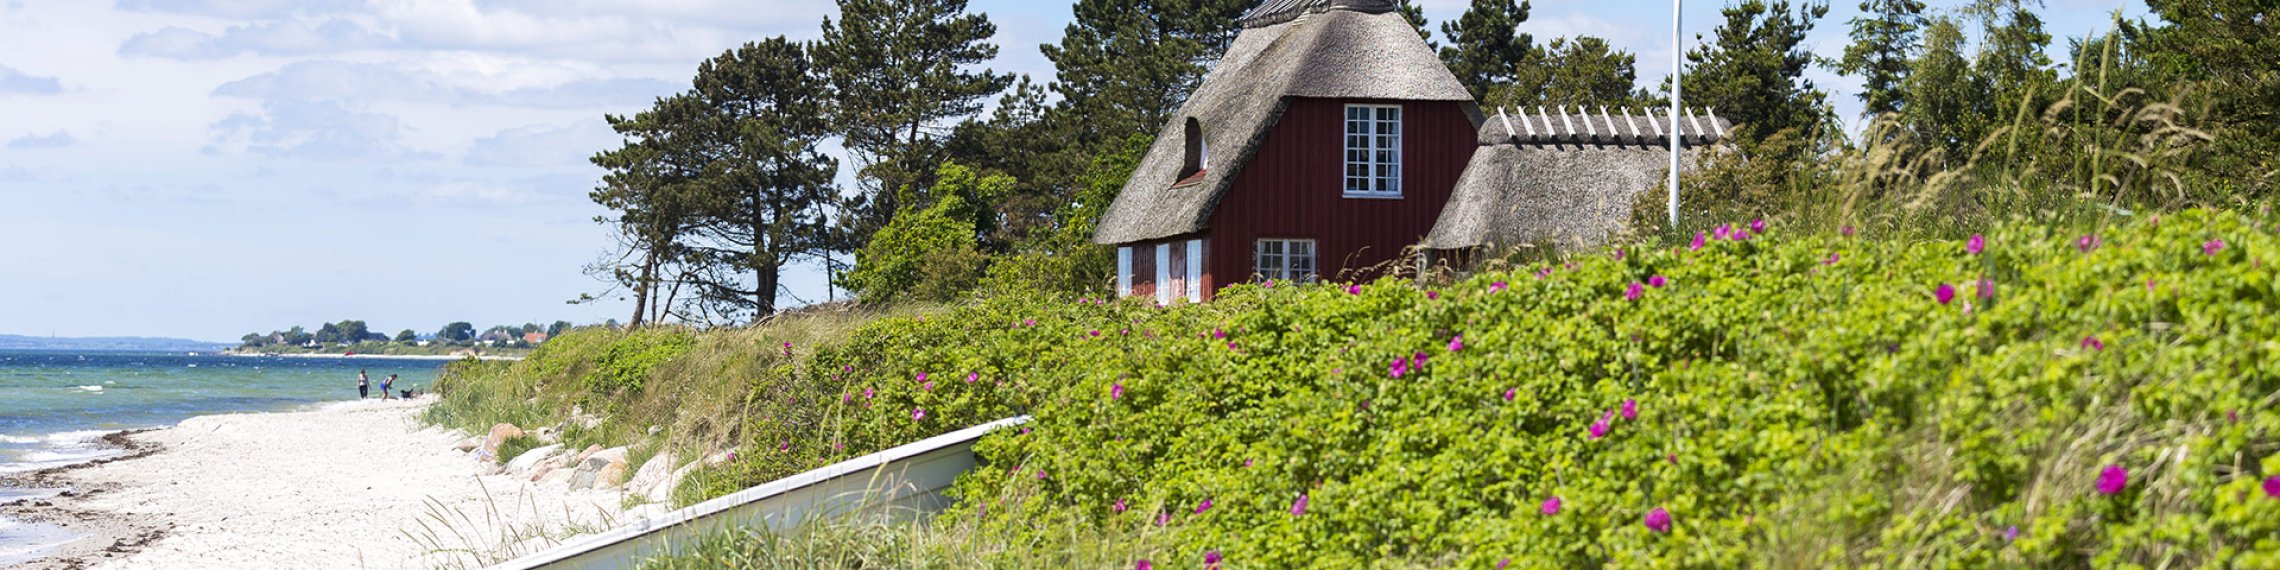 Ferienhaus am Meer - Dänemarks Küsten